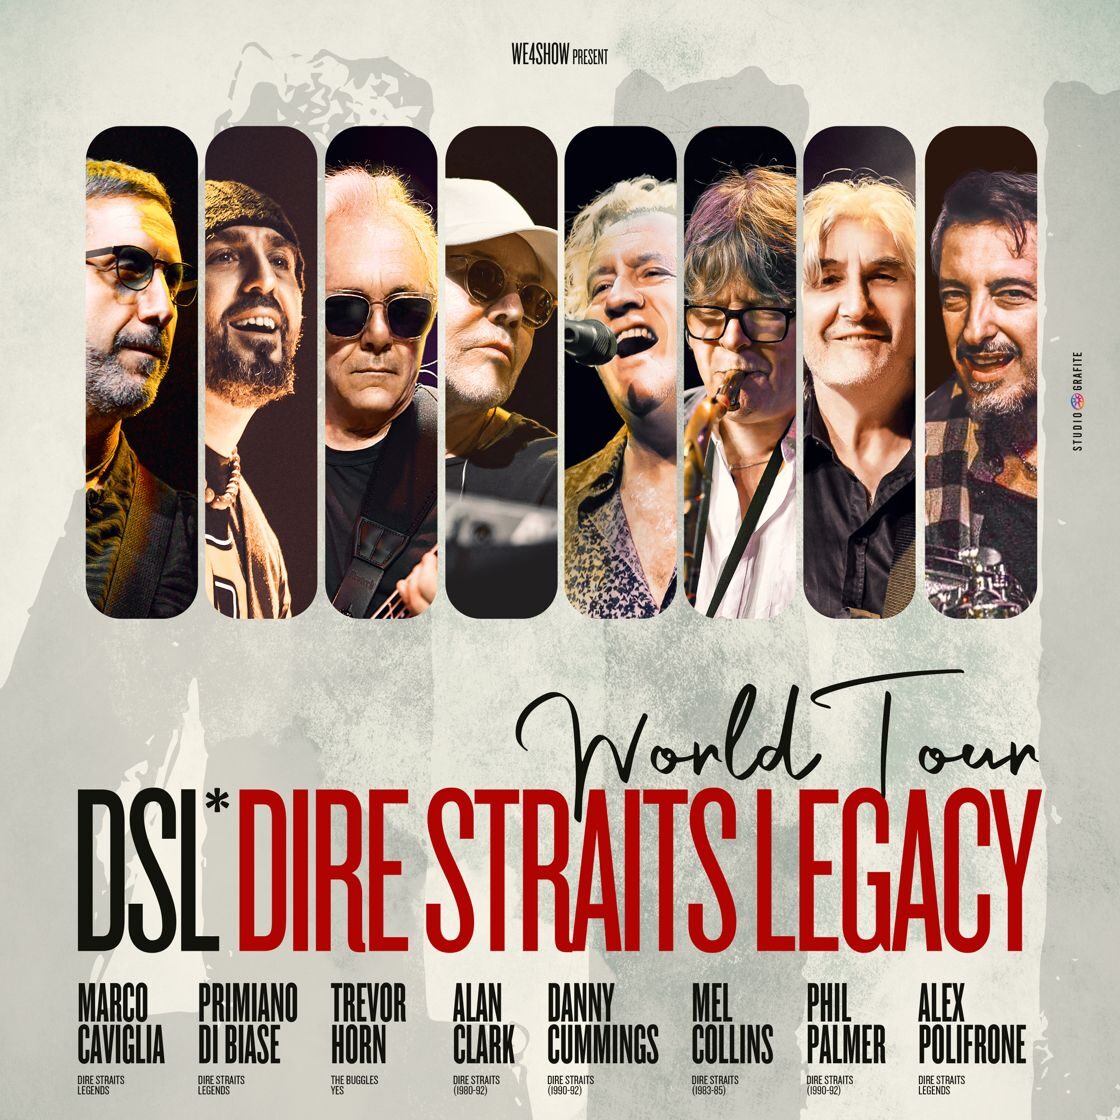 Grafica Promozionale dei Dire Straits Legacy per il 4U World Tour